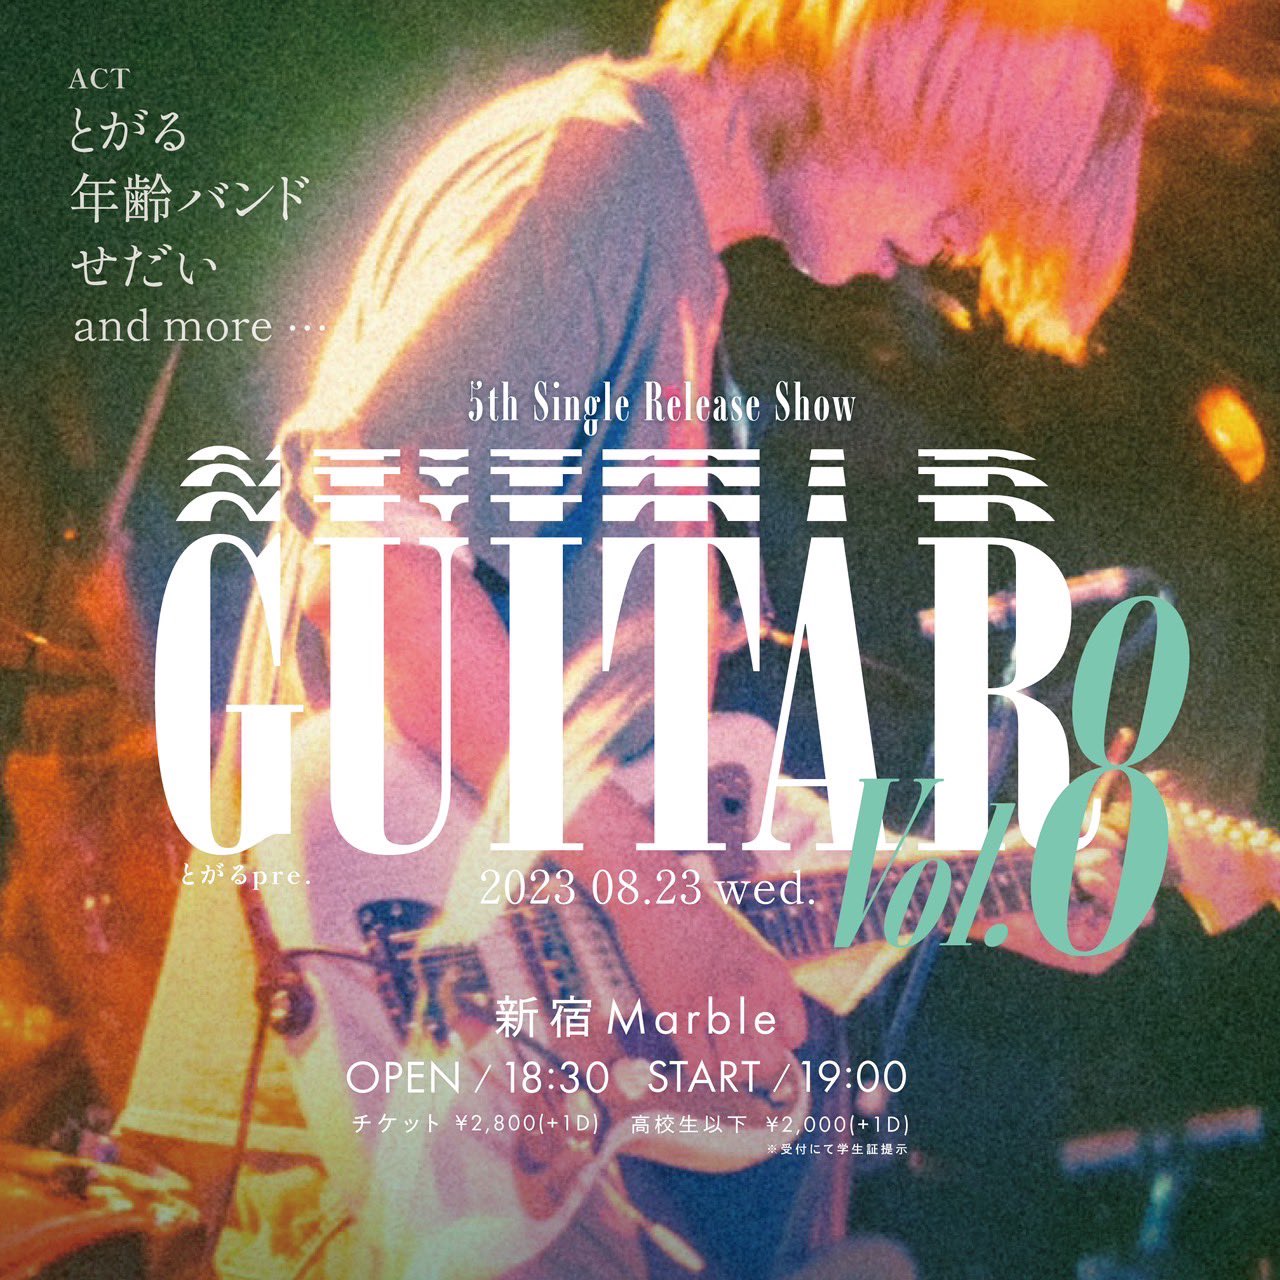 とがるpre.「GUITAR Vol.8」5th Single Release Show